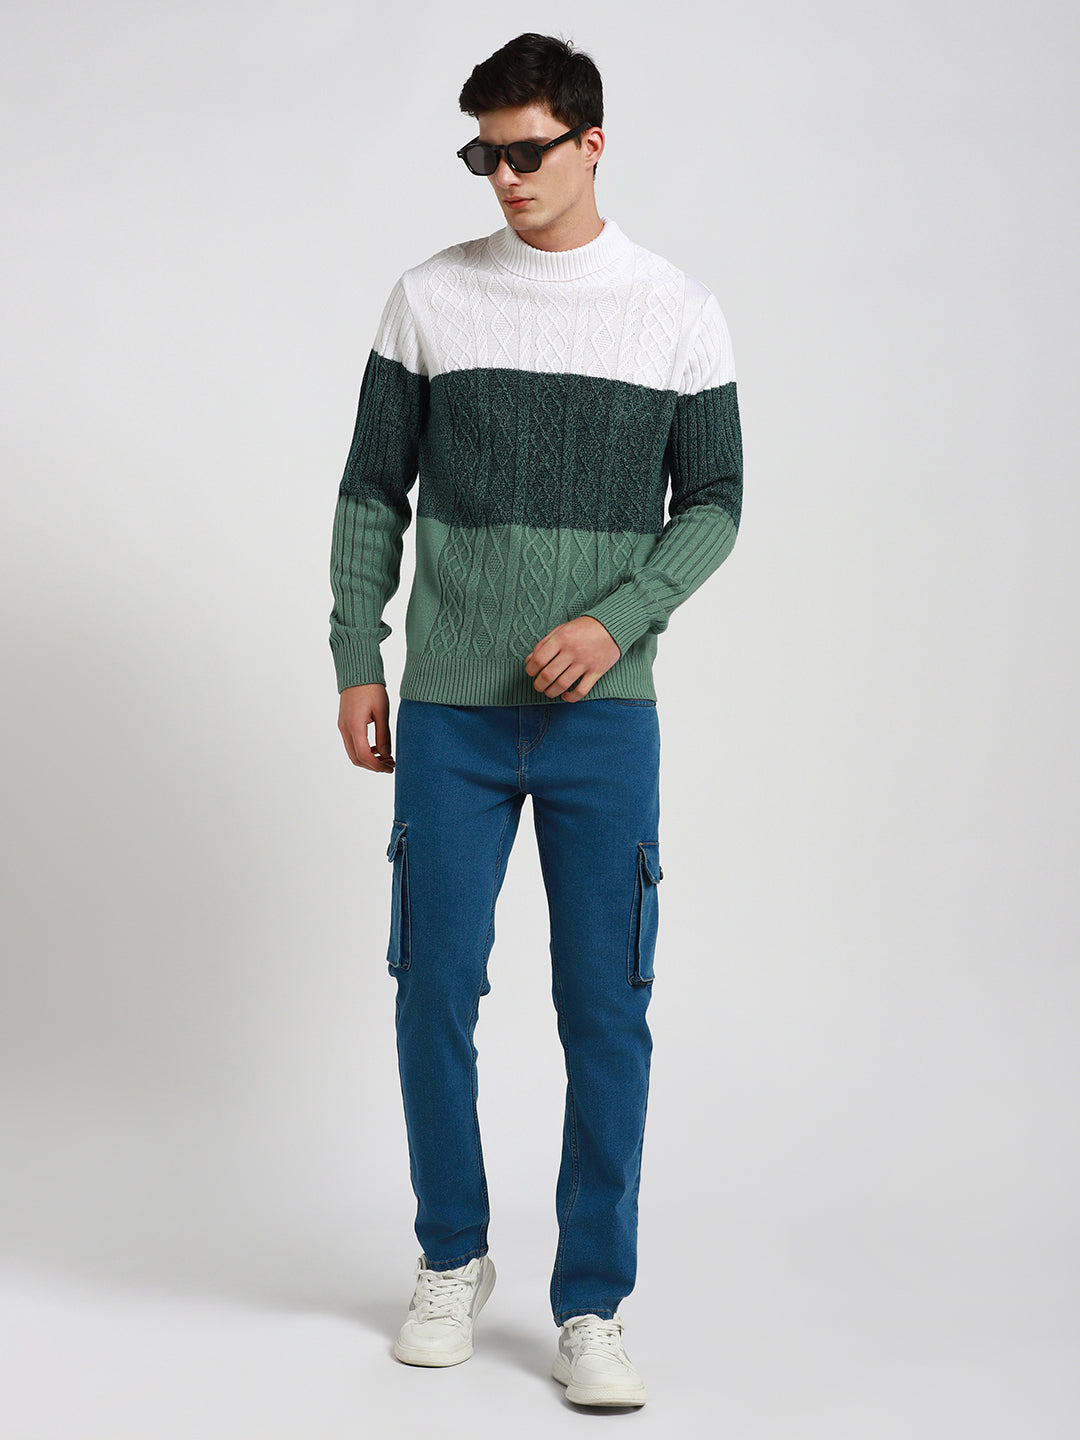 Dennis Lingo Men's Off White Colourblock  Full Sleeves Pullover Sweater